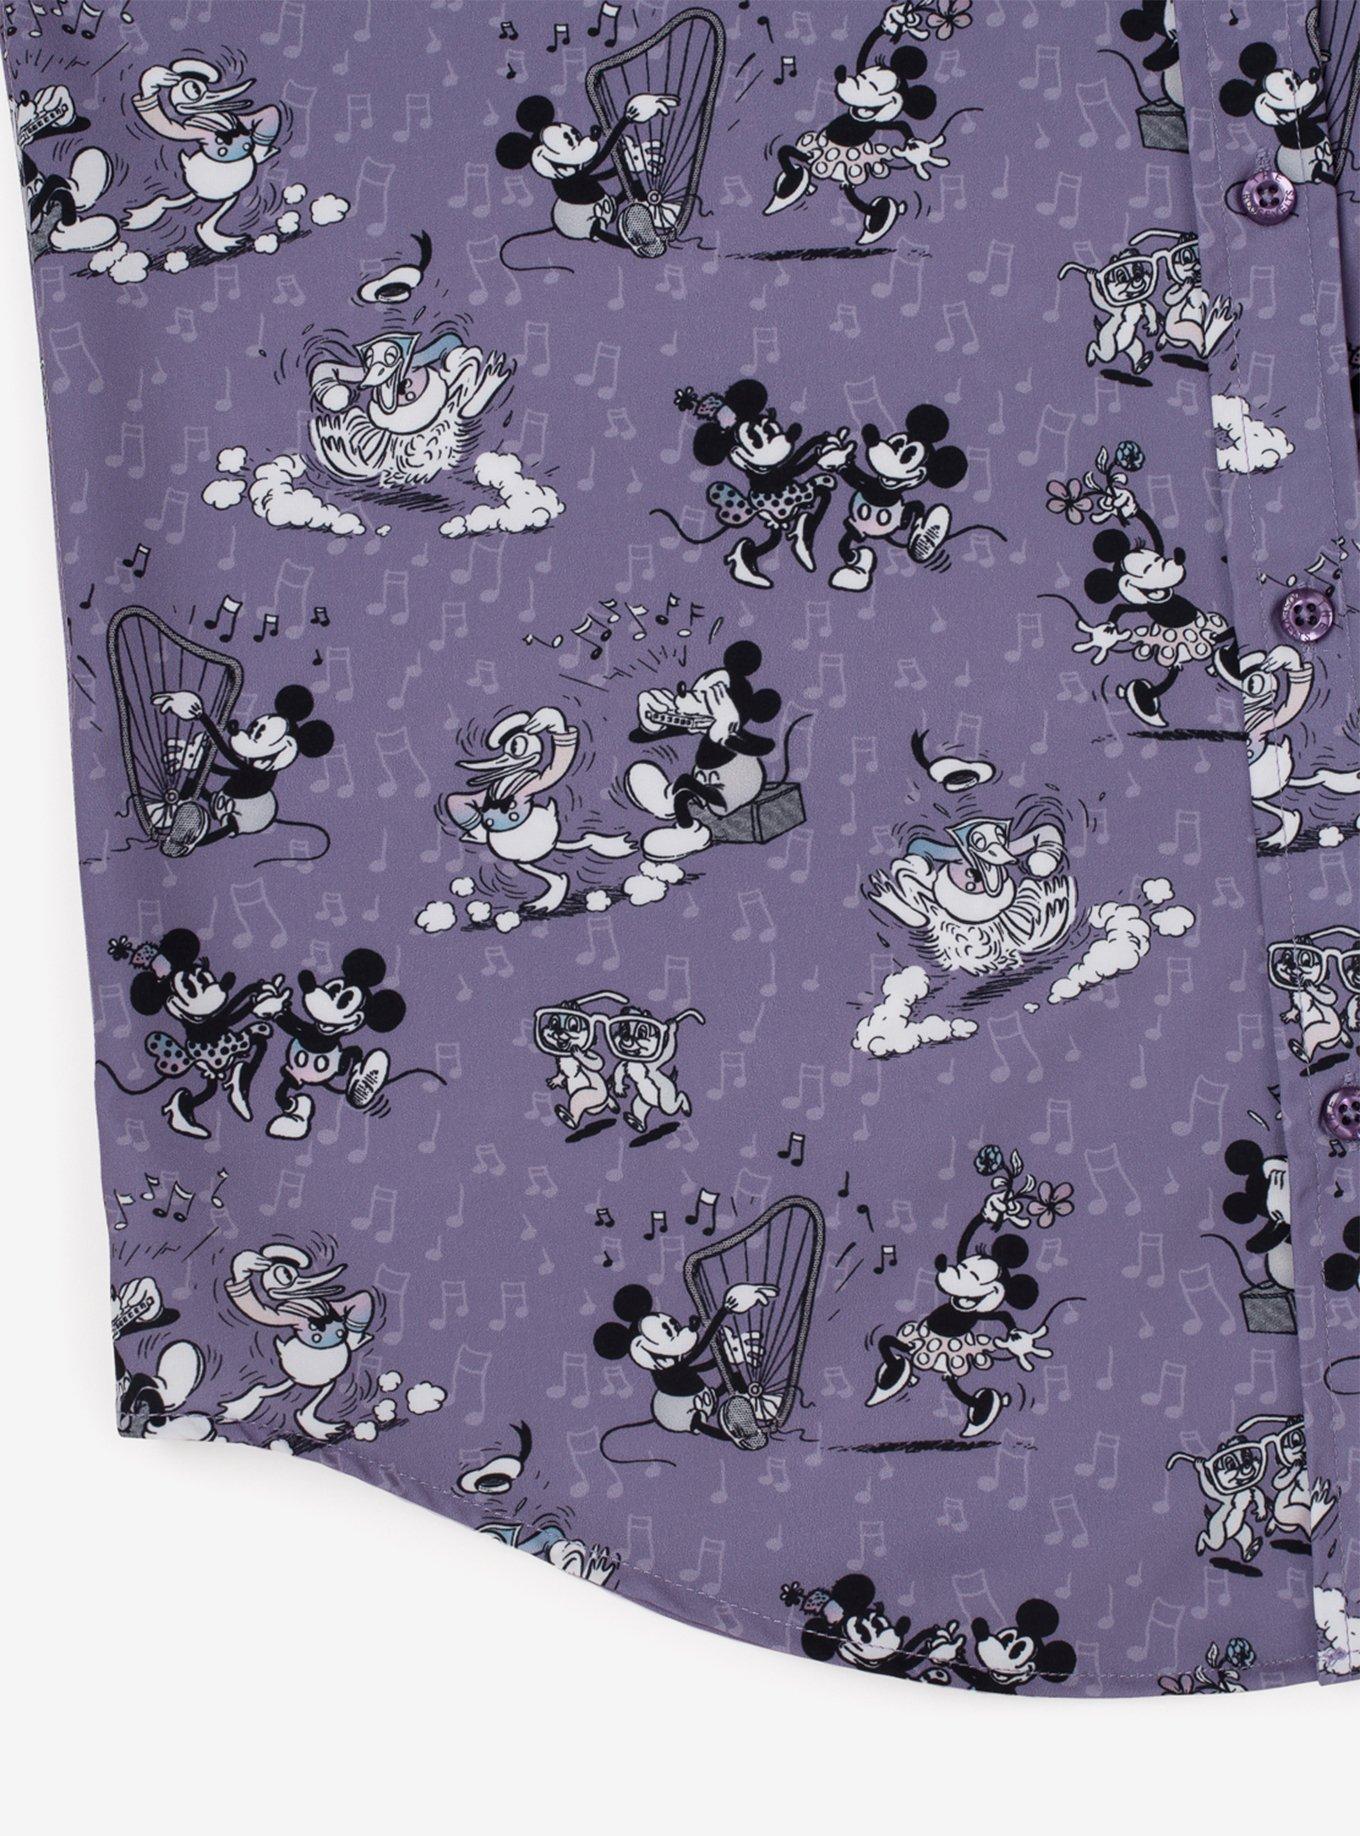 Disney100 x RSVLTS "Dancing Toons" Button-Up Shirt, PURPLE, alternate